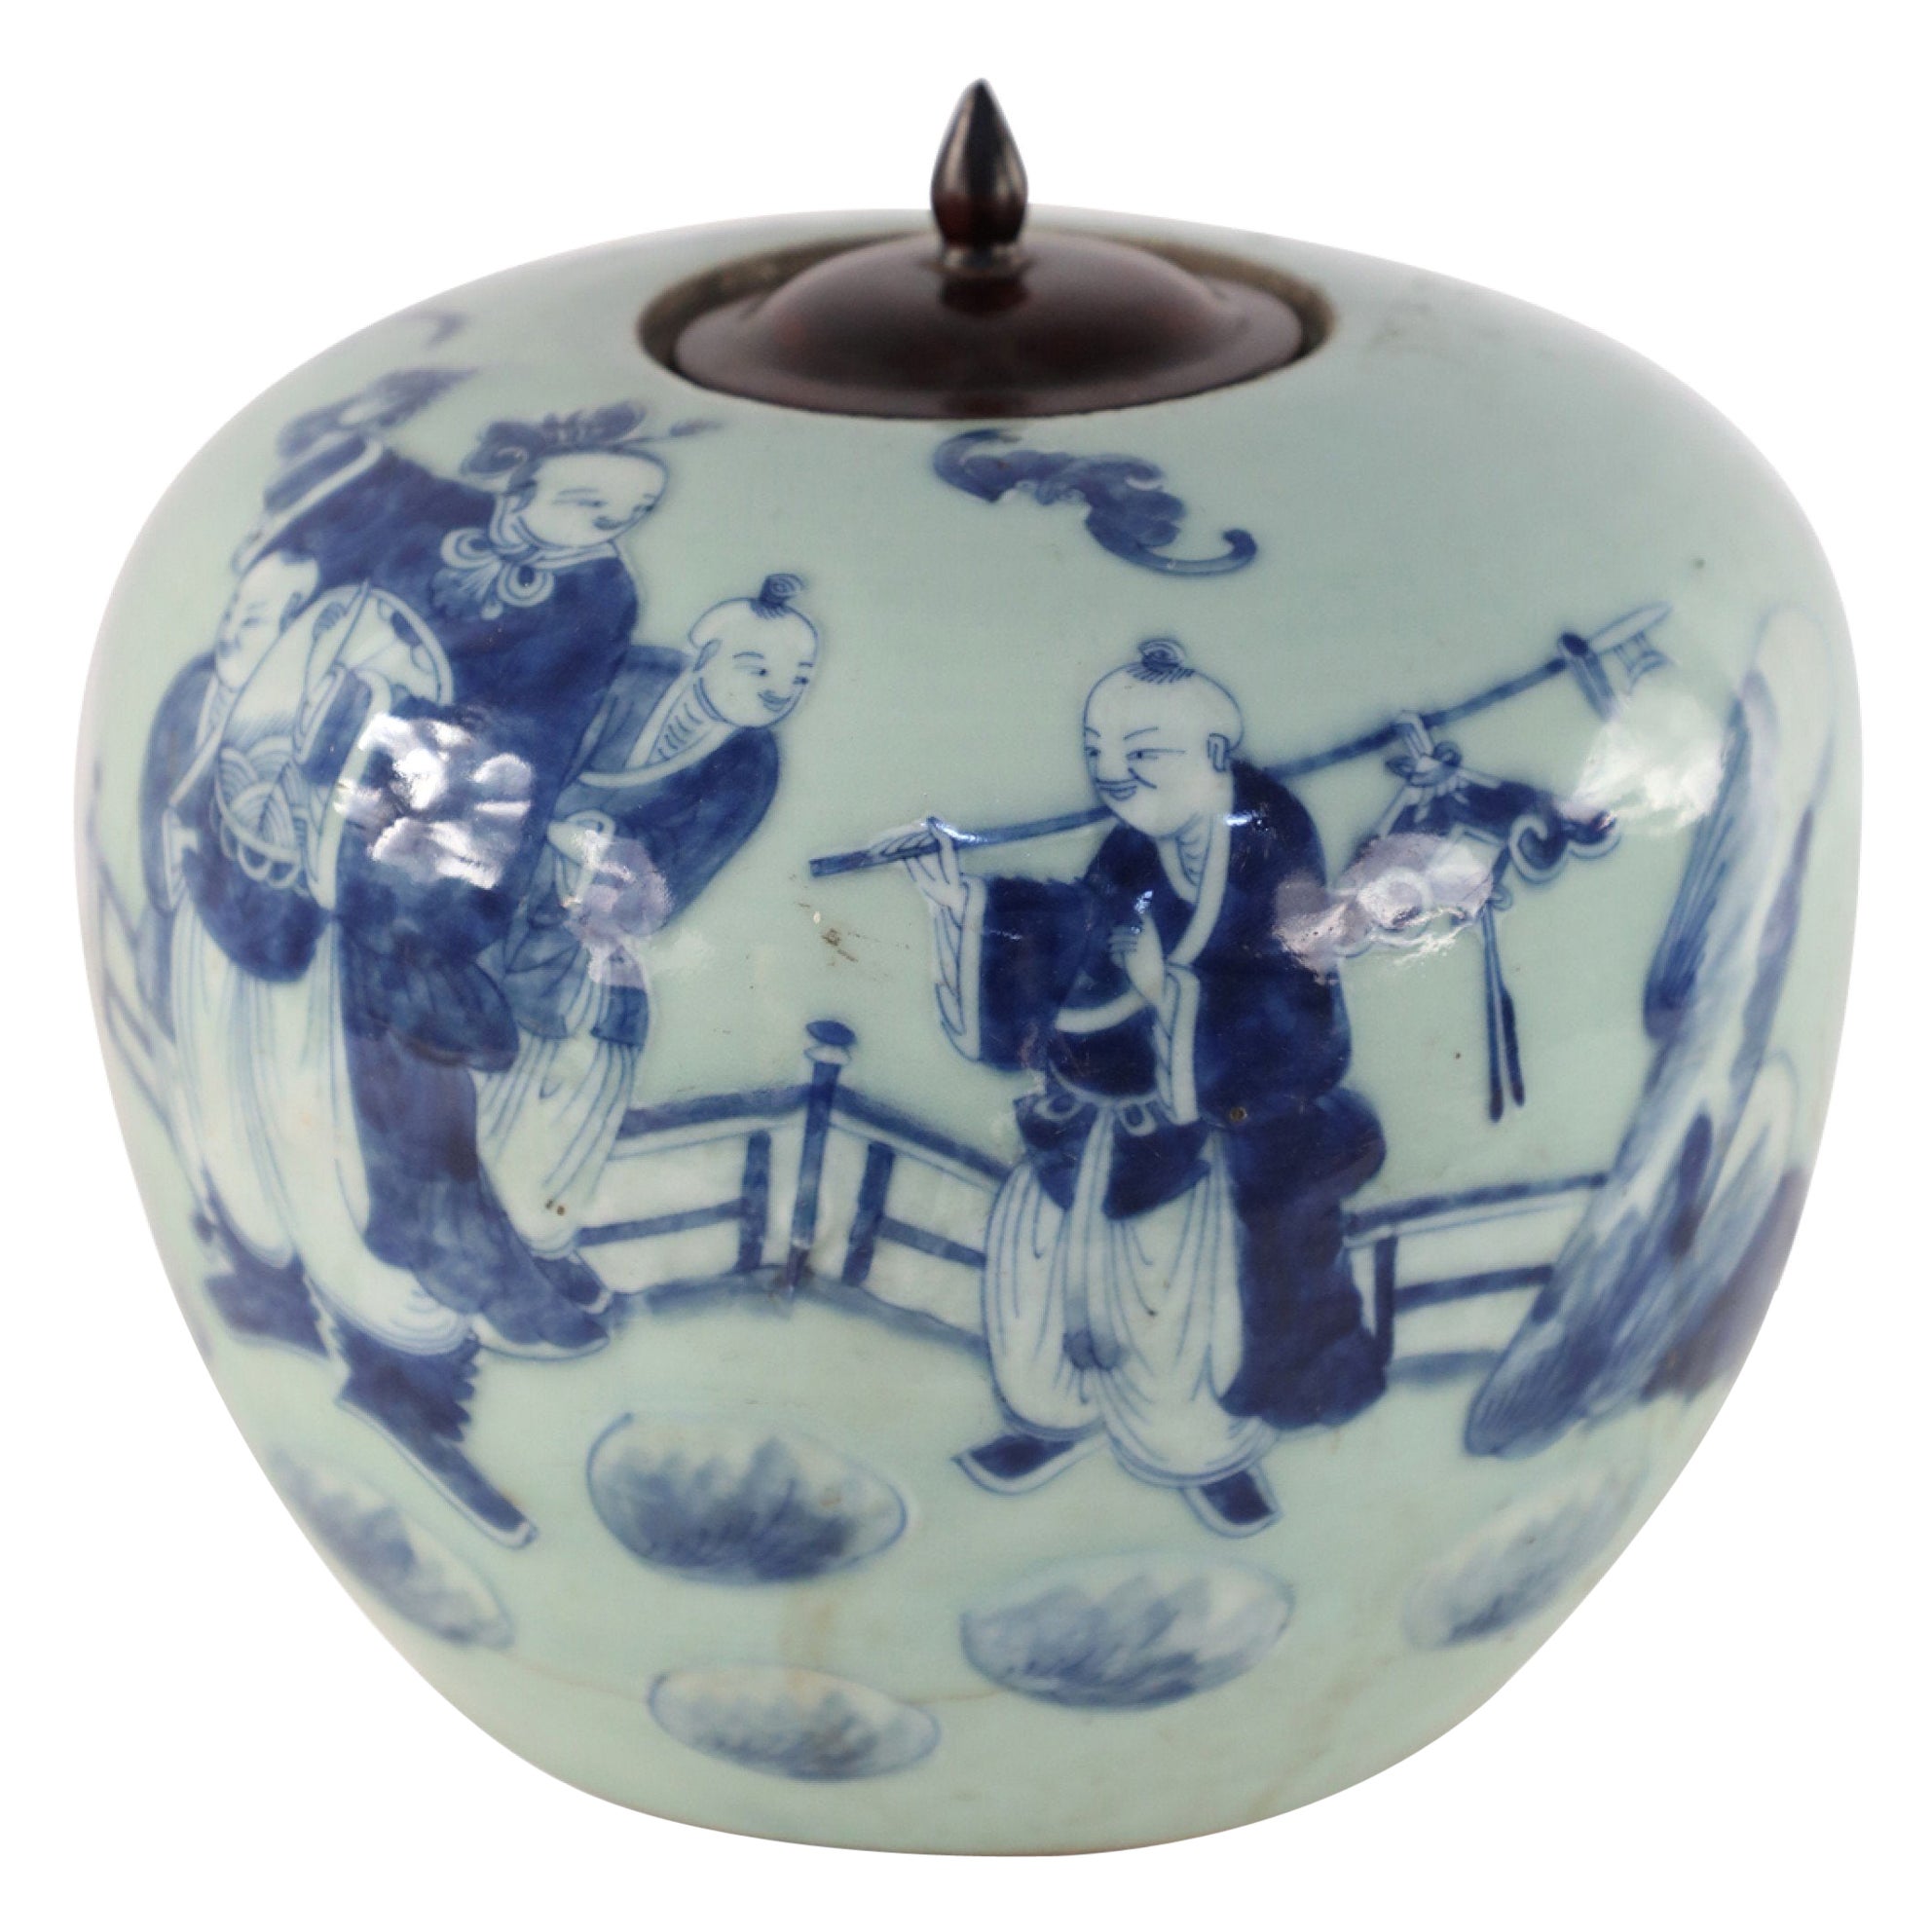 Chinese Celadon and Blue Figurative Lidded Porcelain Ginger Jar